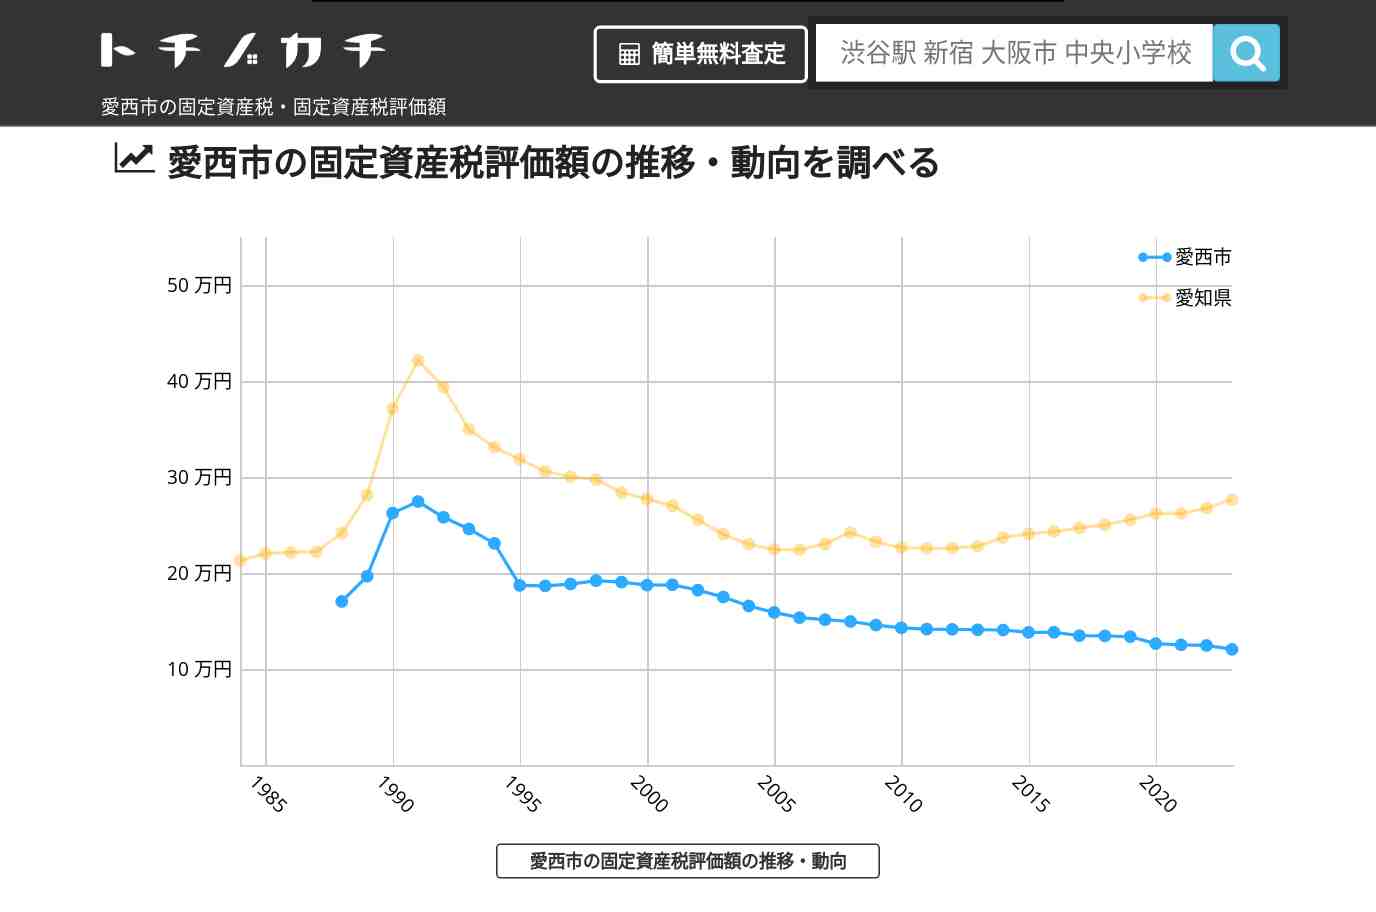 佐織中学校(愛知県 愛西市)周辺の固定資産税・固定資産税評価額 | トチノカチ